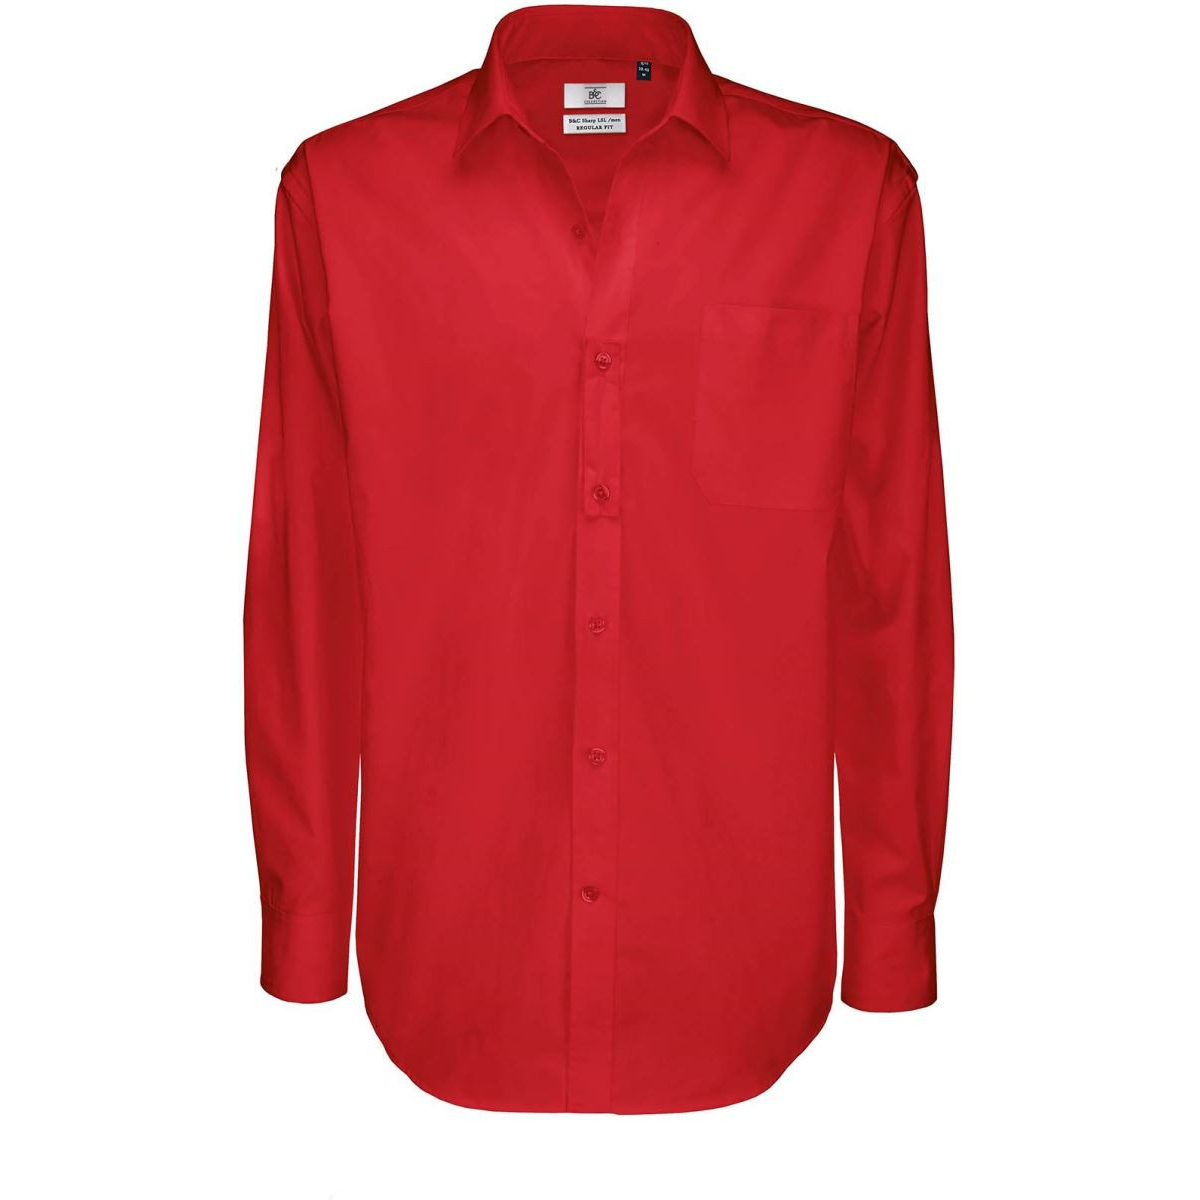 Pánská keprová košile B&C Sharp s dlouhým rukávem - červená, S